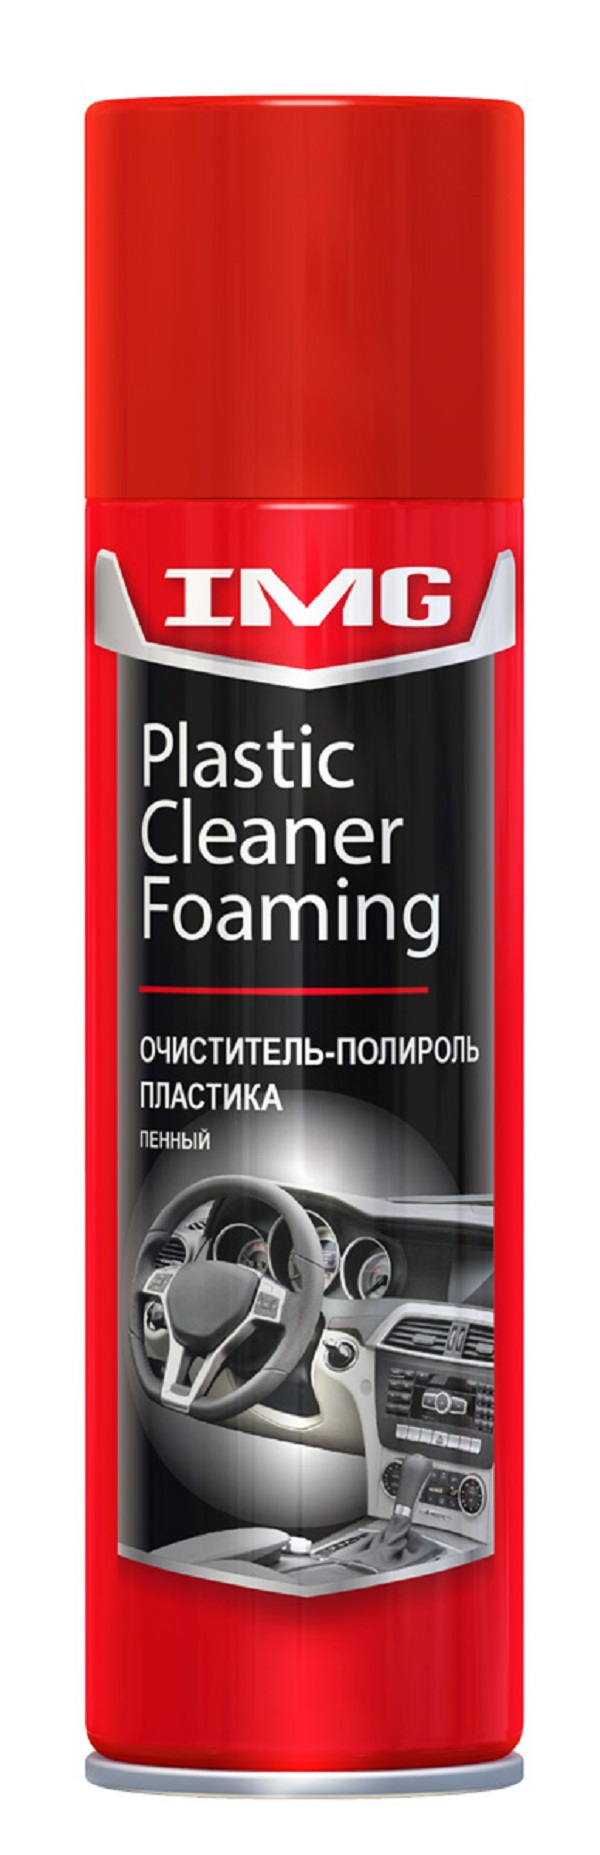 Очиститель-полироль пластика пенный (аэрозоль) 300 мл. IMG арт. MG-213